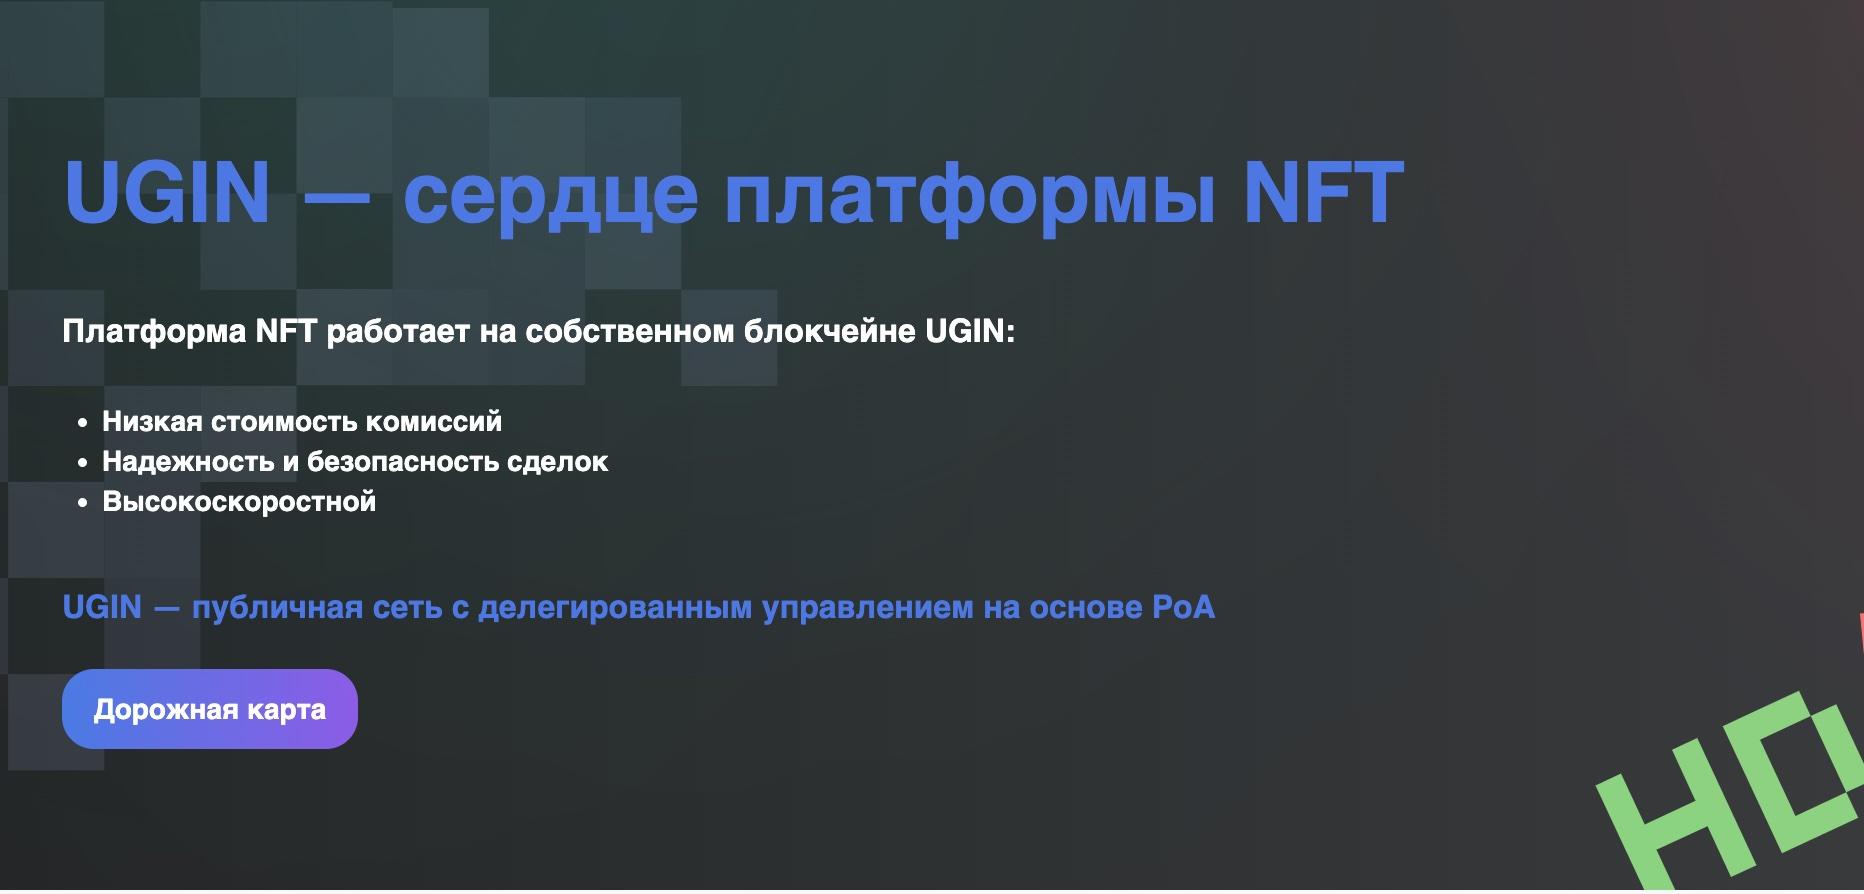 Работа с коинами на NFT: платформе UGIN + отзывы